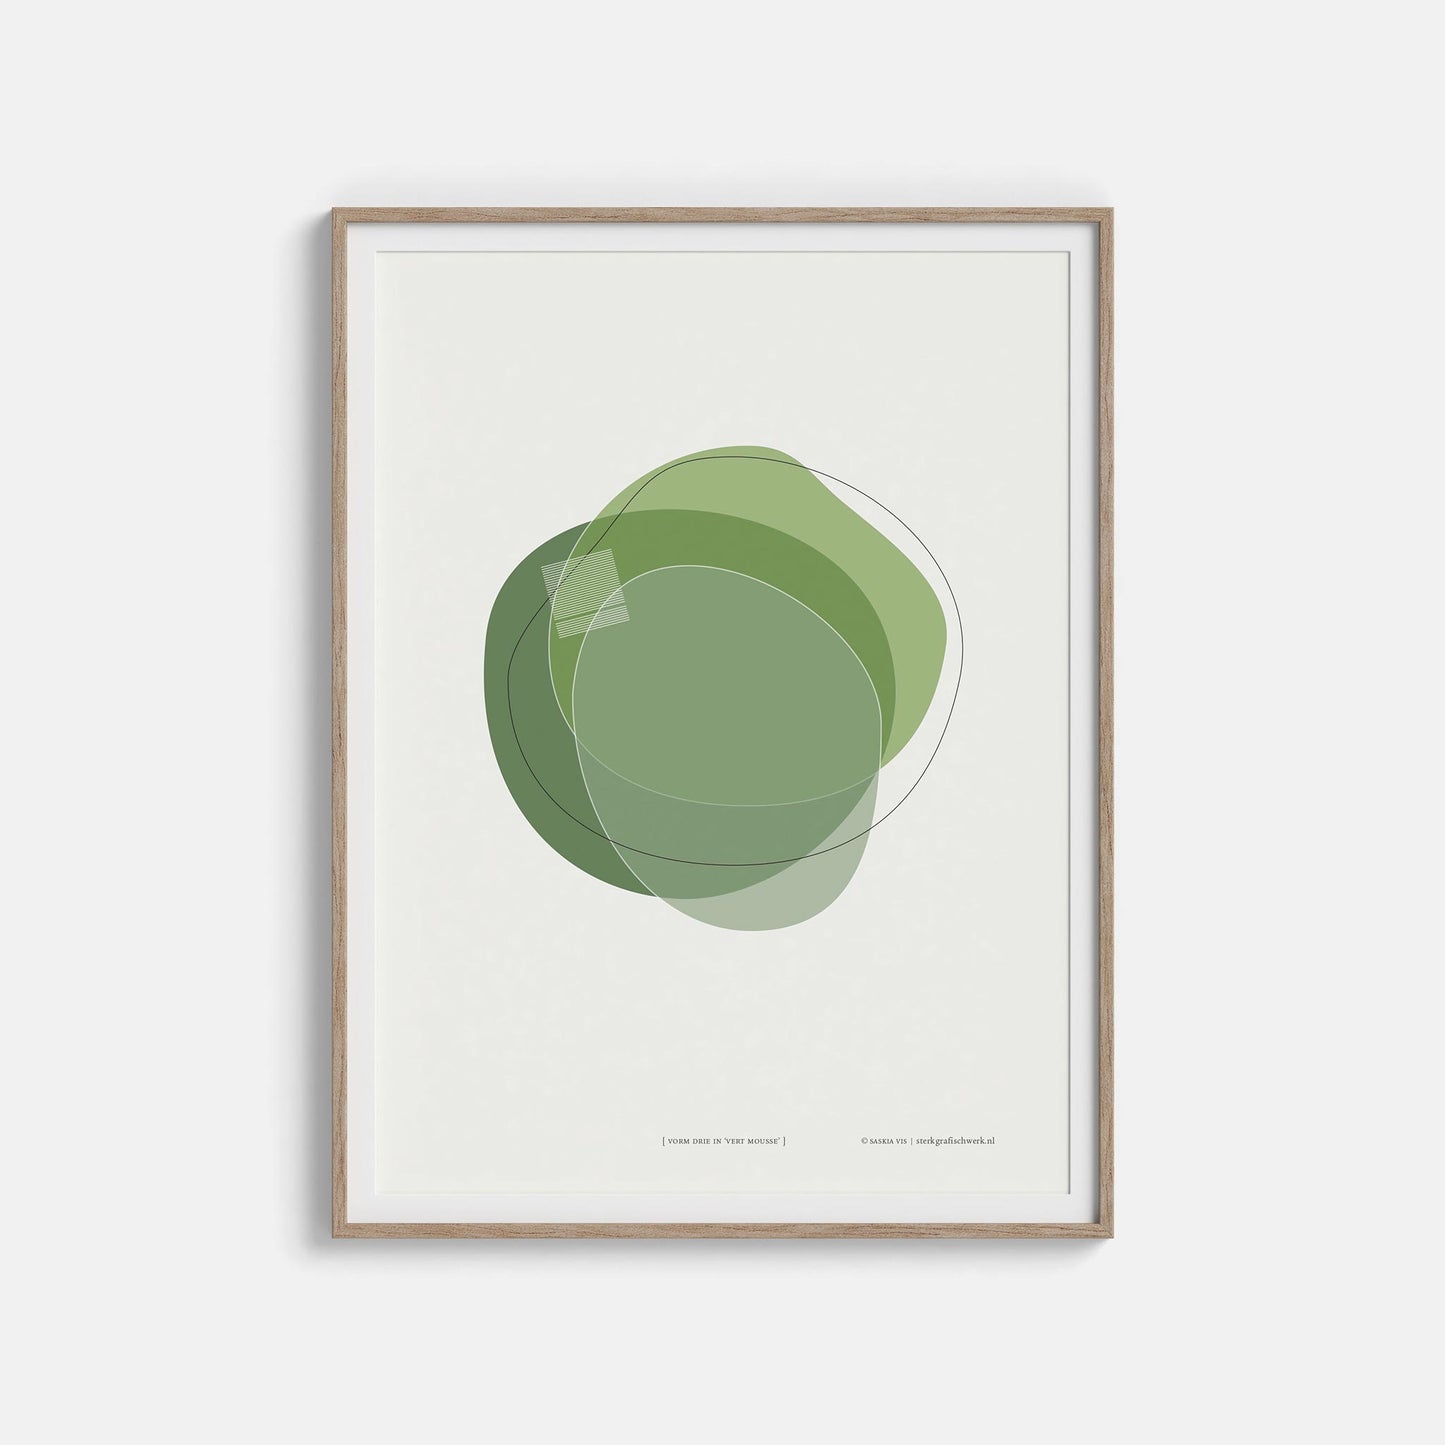 Productafbeelding, poster "vorm drie in vert mousse" foto impressie 2, in een houten lijst hangend aan een witte wand